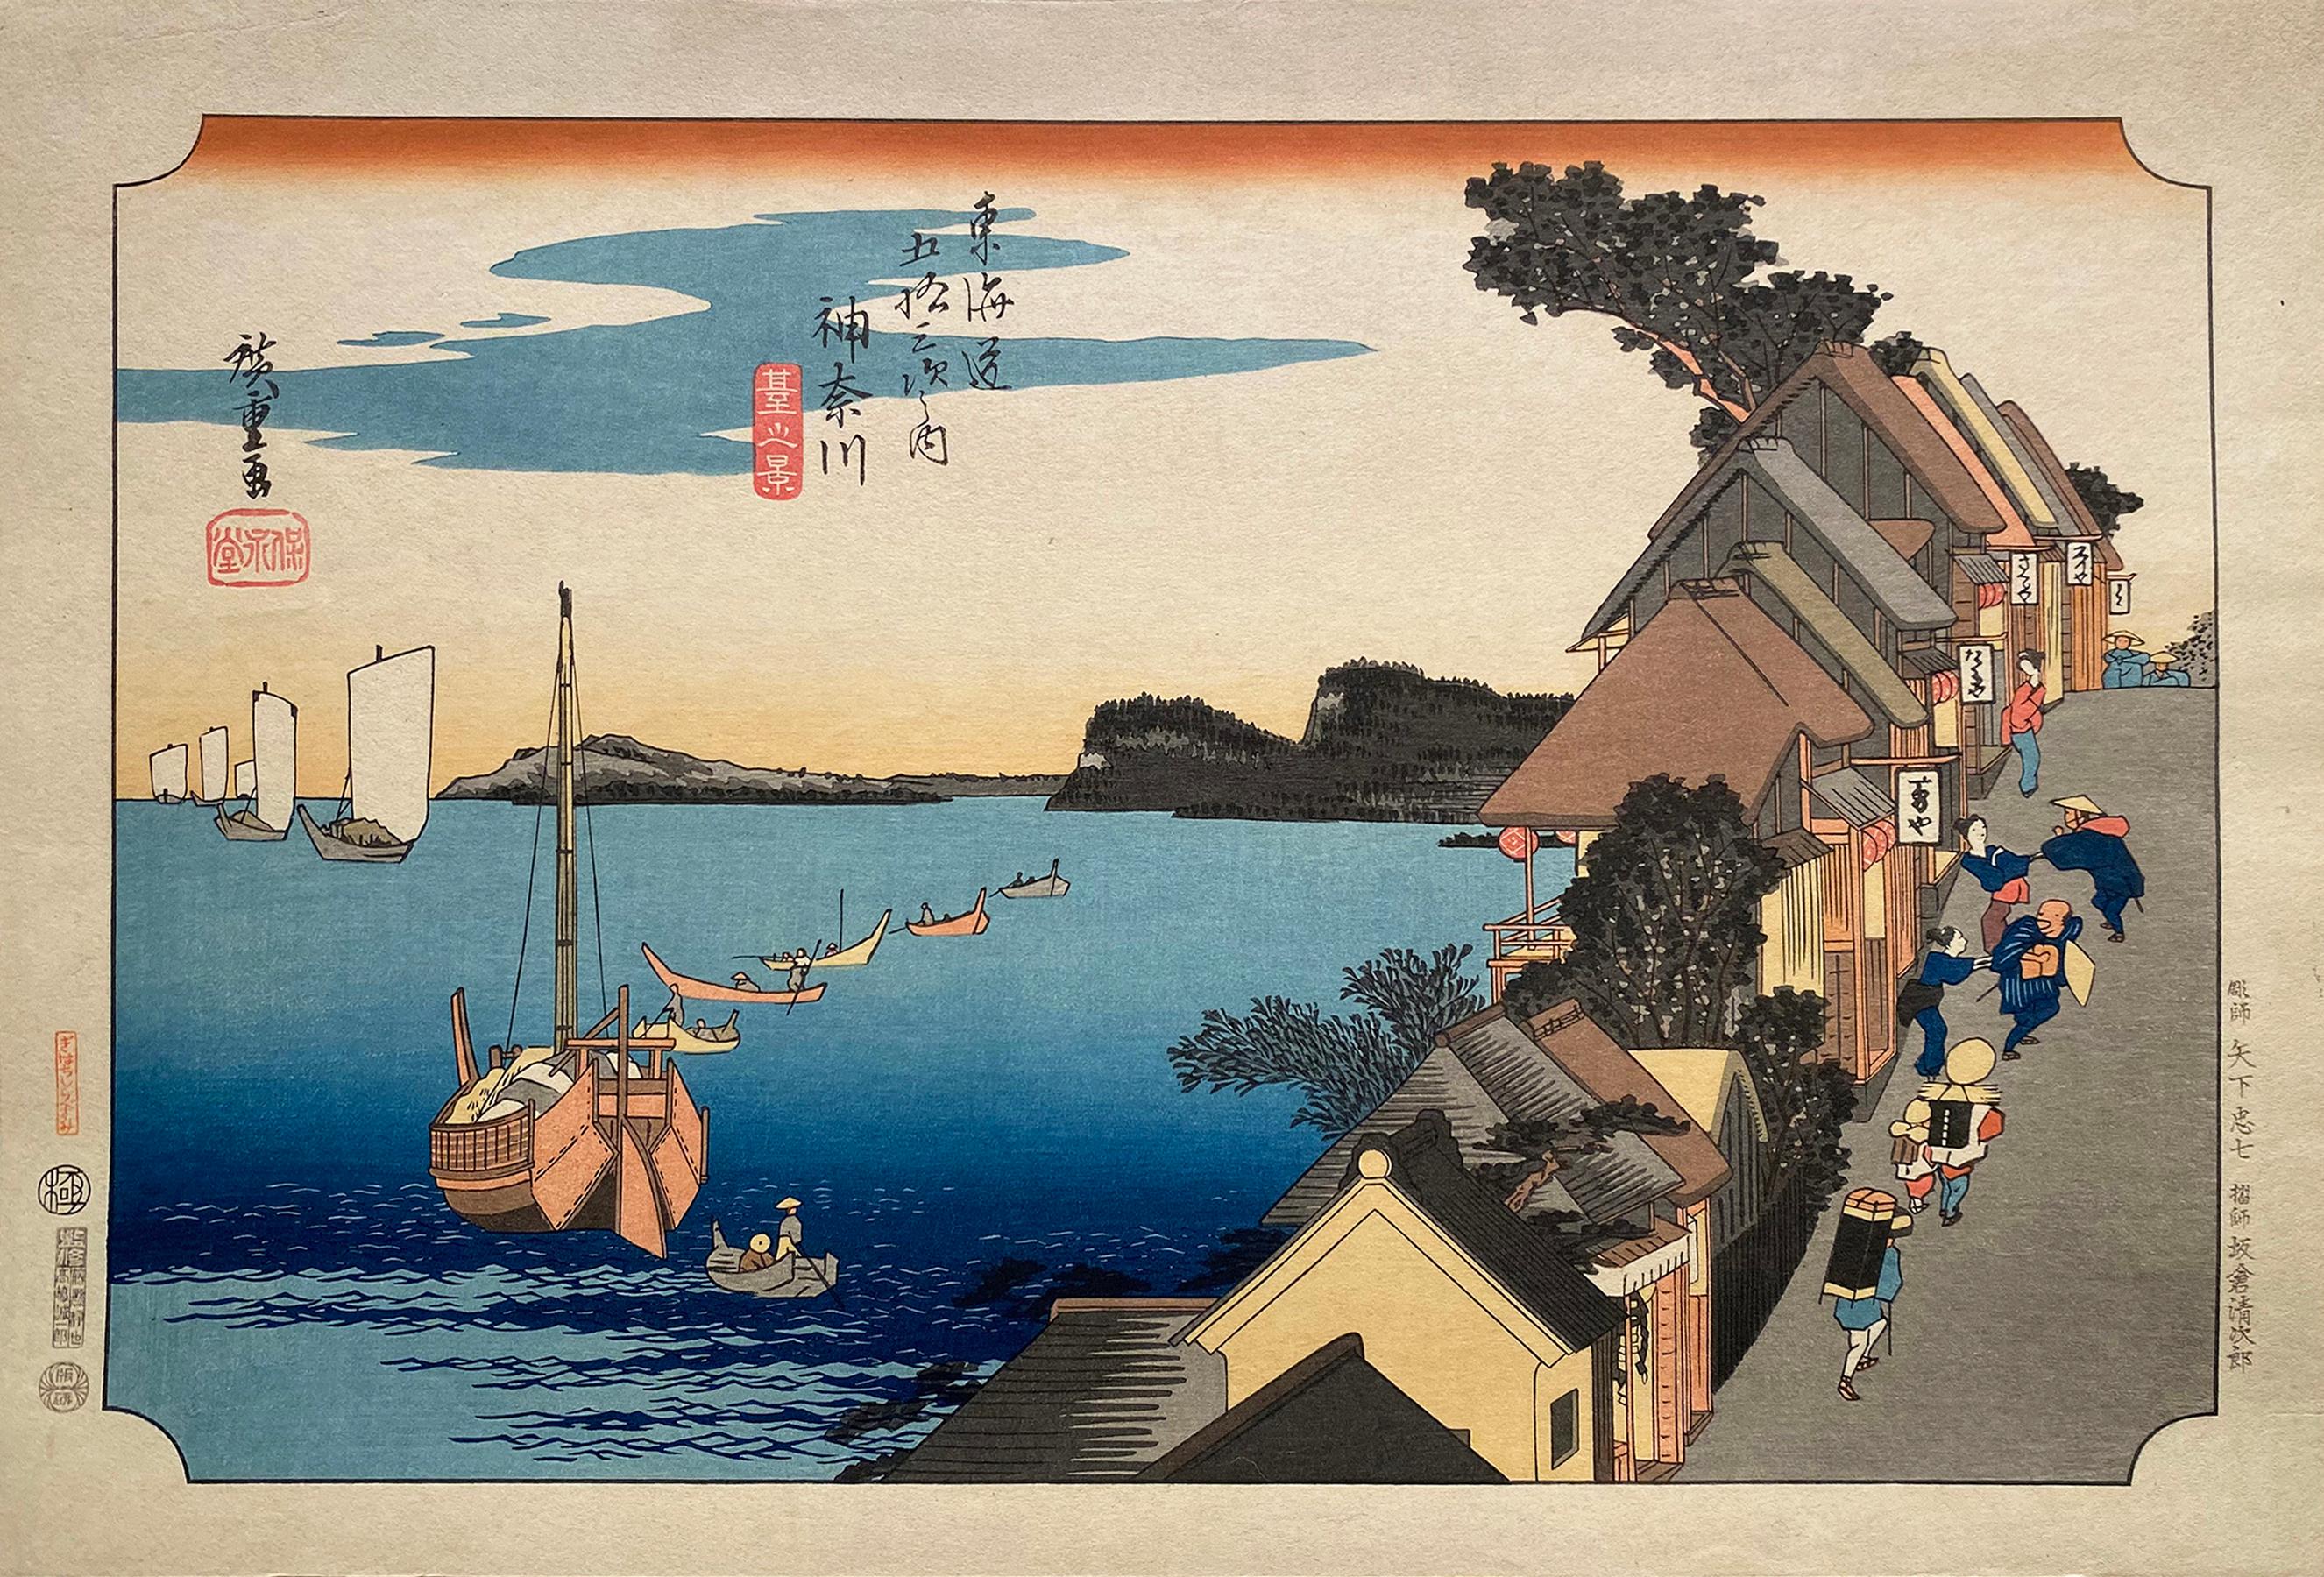 Utagawa Hiroshige (Ando Hiroshige) Landscape Print - 'A View of Kanagawa', After Utagawa Hiroshige 歌川廣重, Ukiyo-e Woodblock, Tokaido